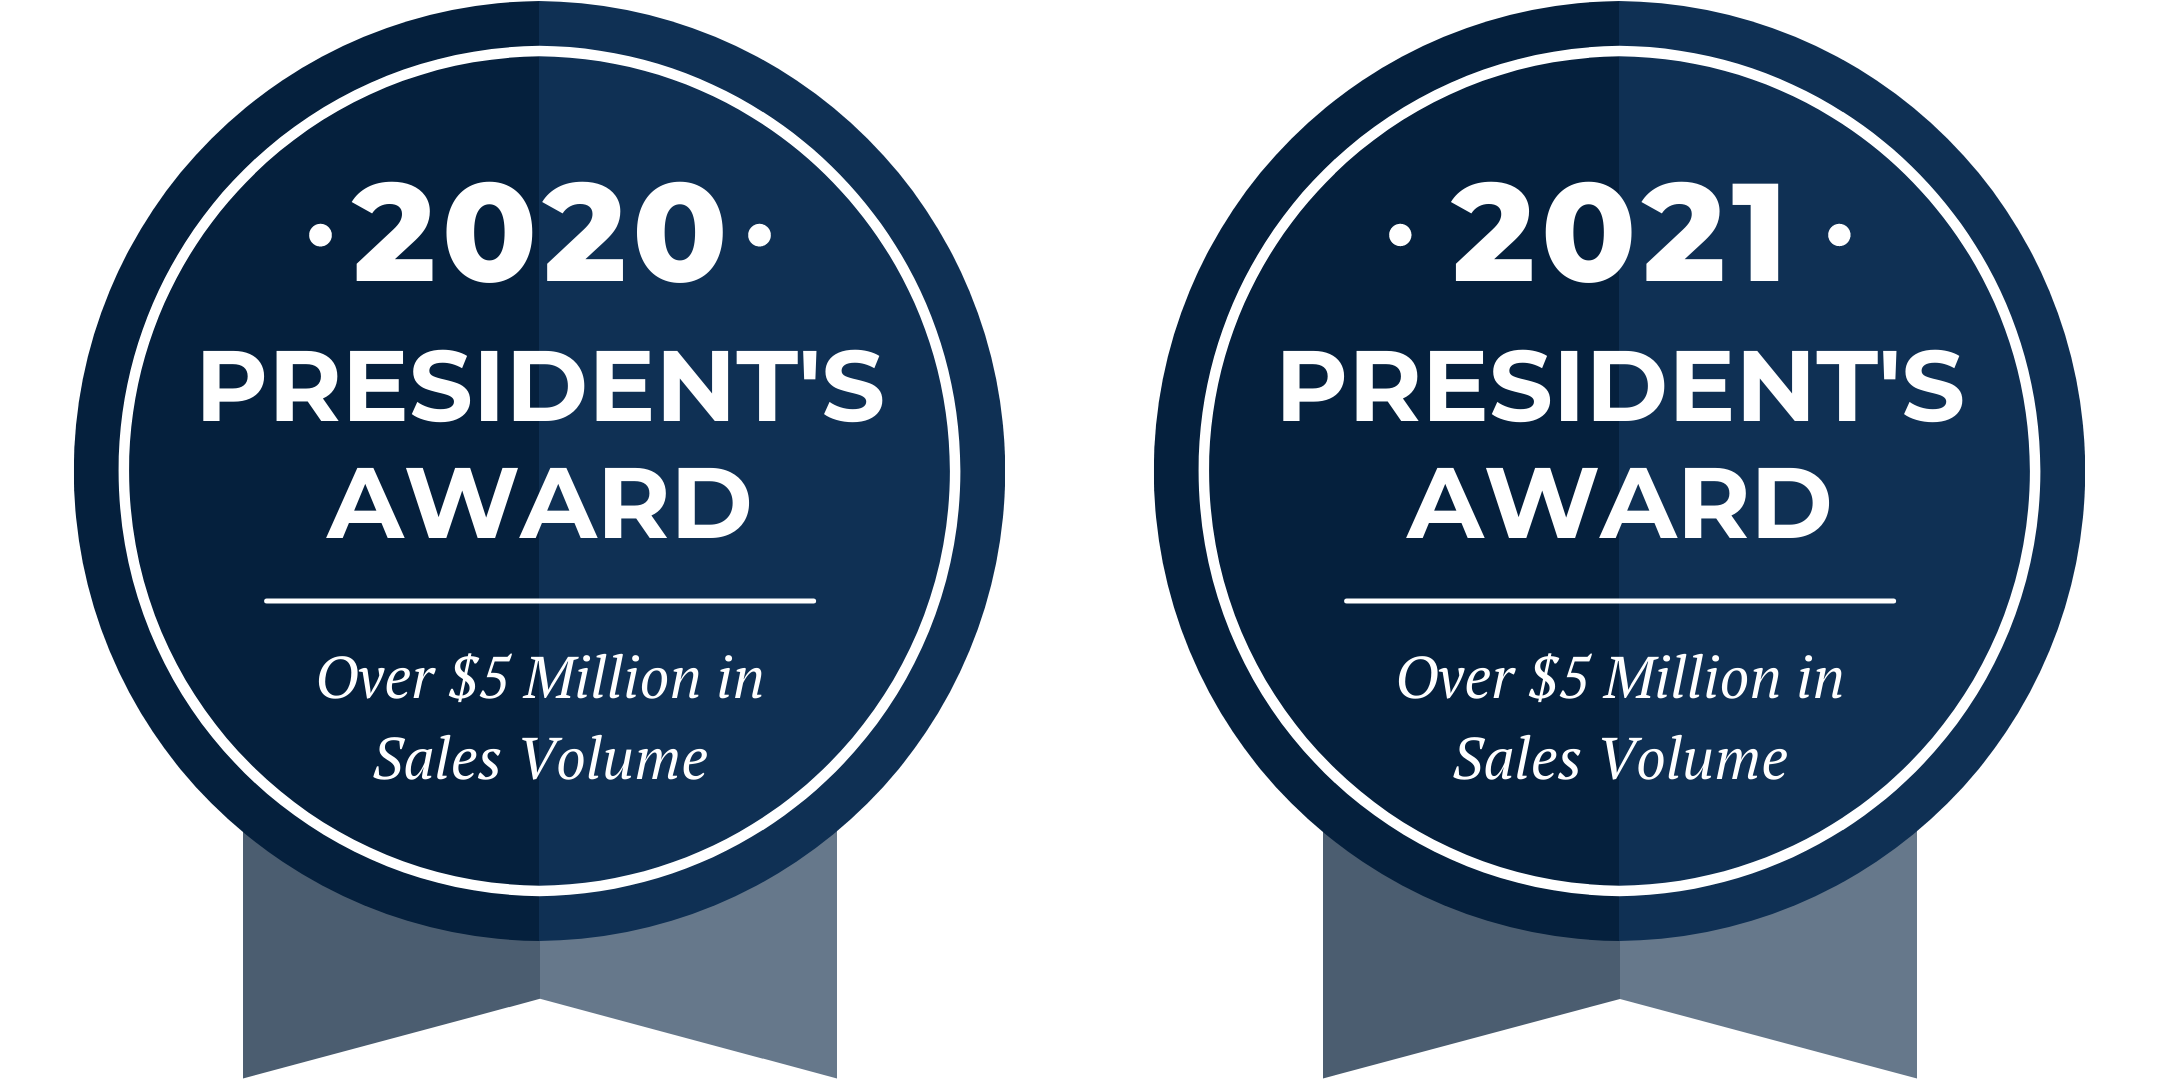 2020 President's Award & 2021 President's Award